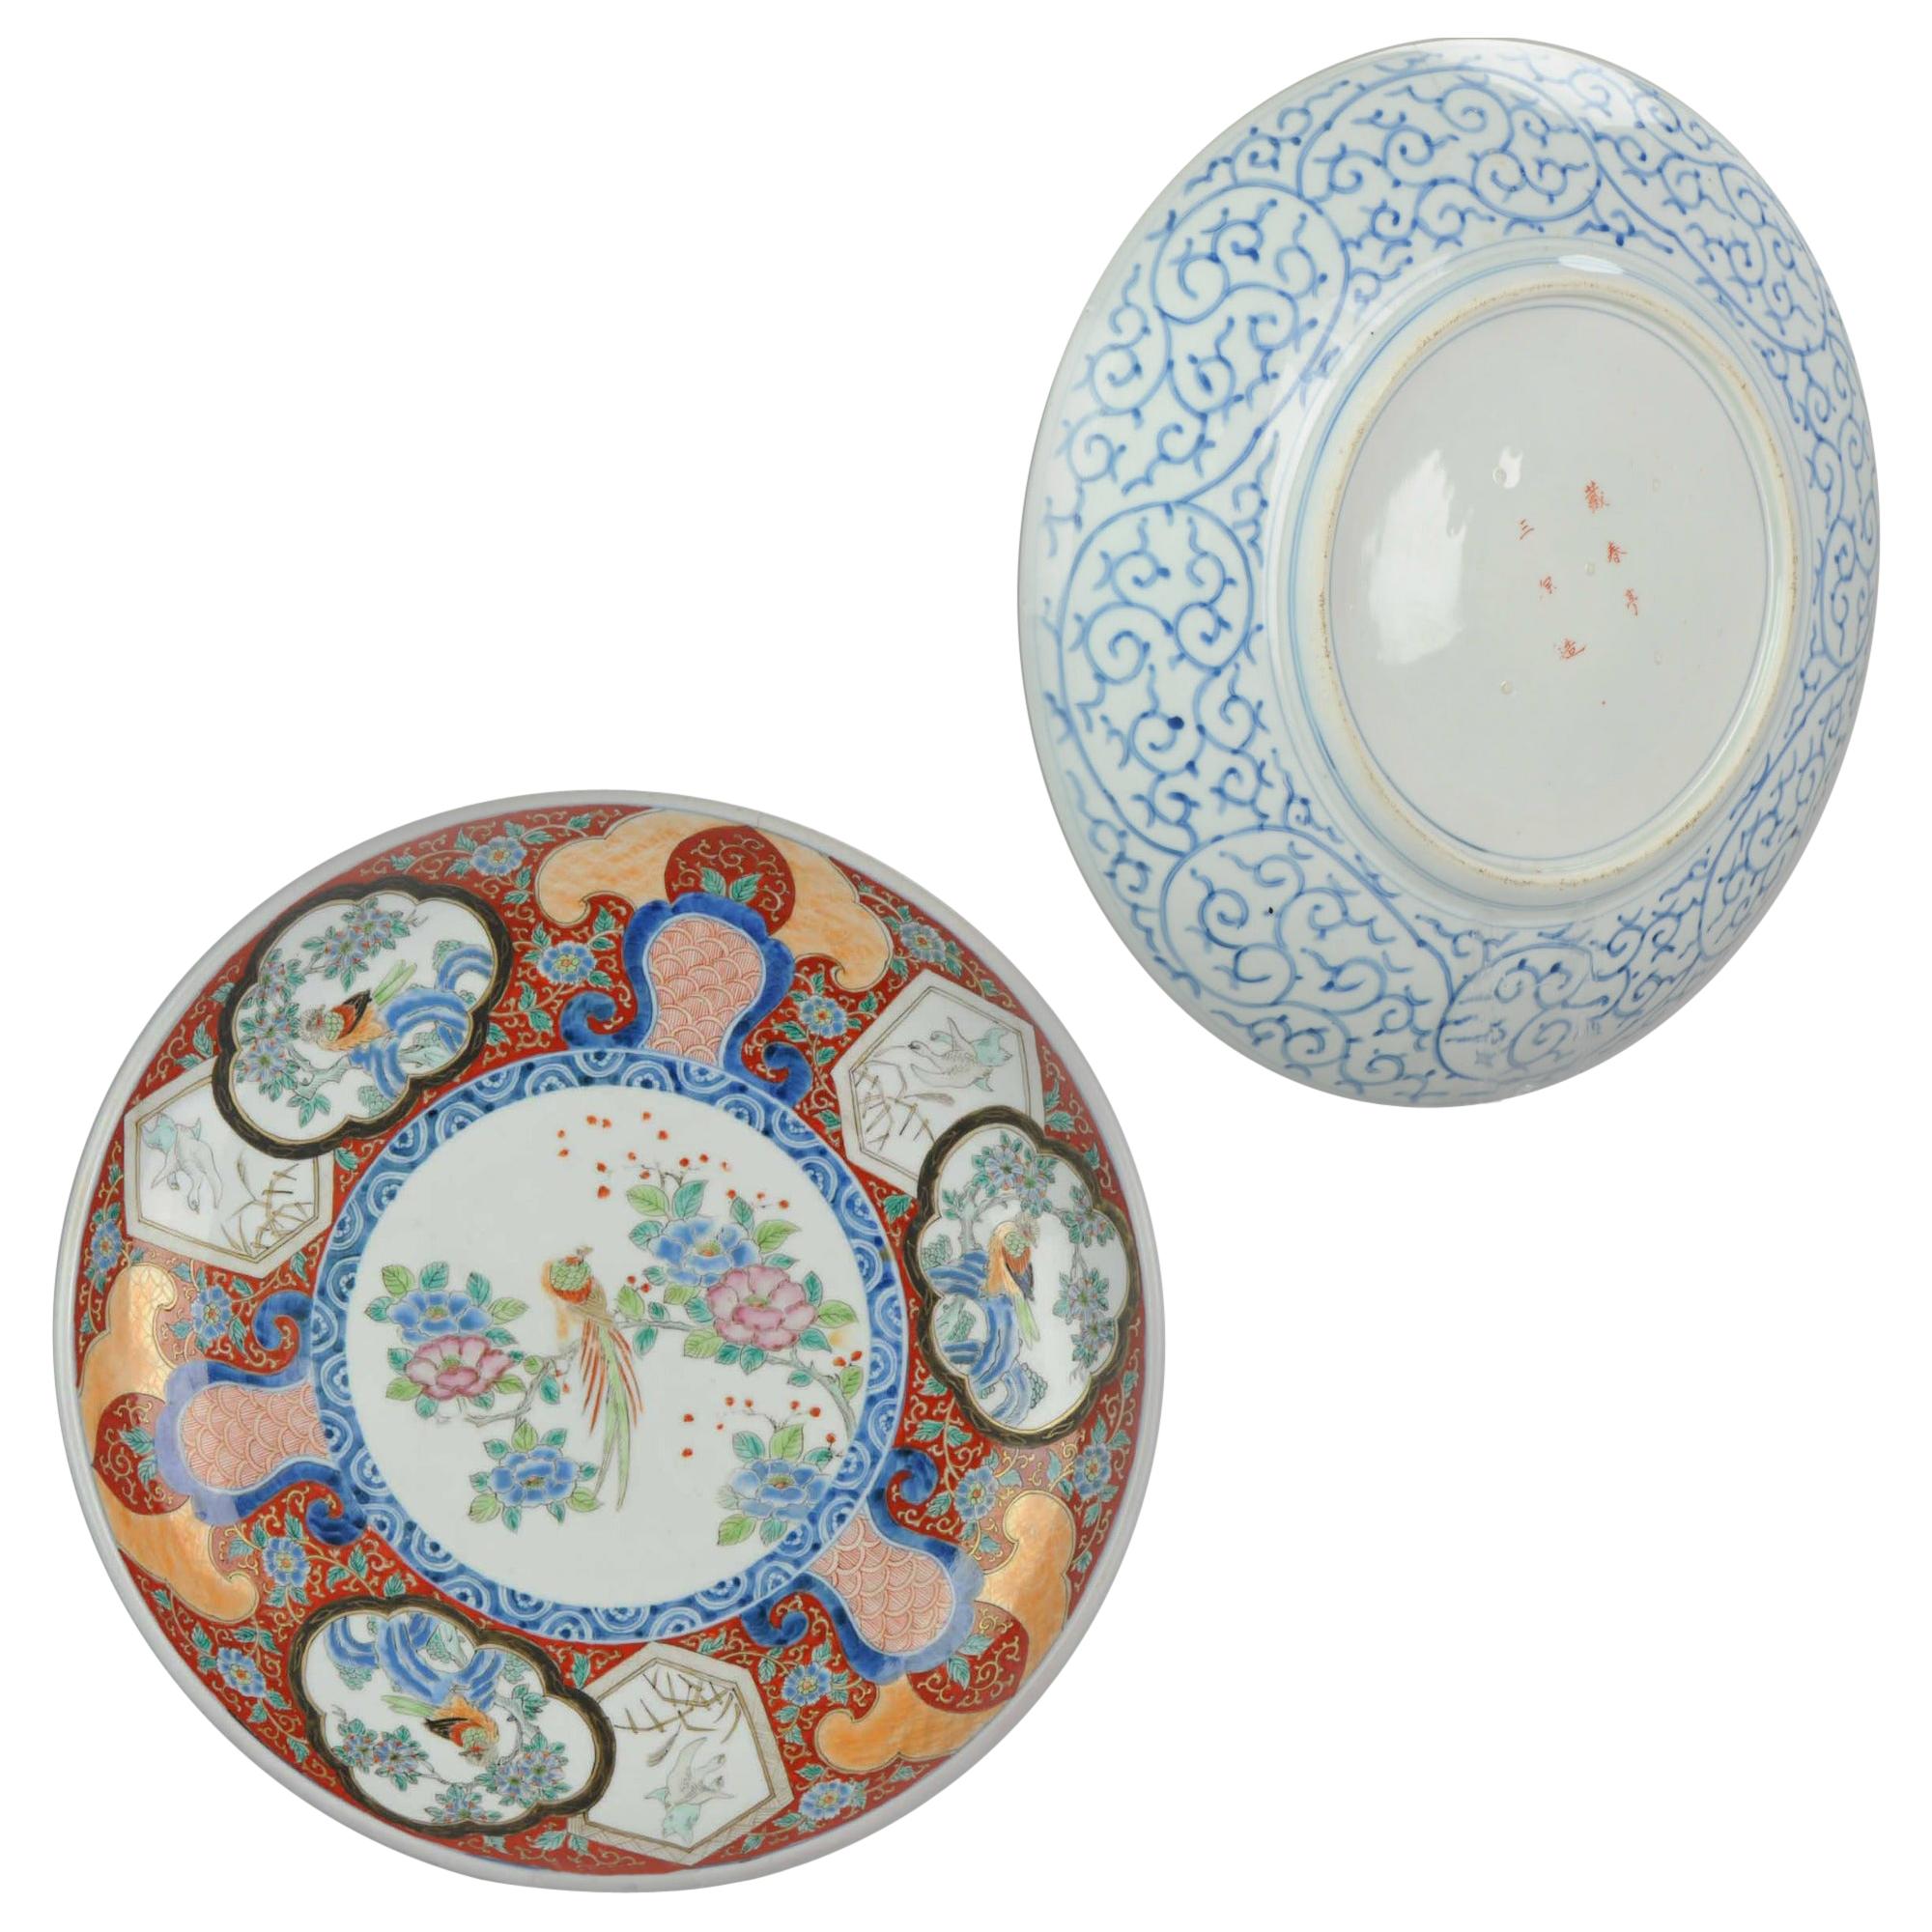 Assiette de présentation en porcelaine japonaise Meiji Taisho marquée Antique Japan Blue Arita